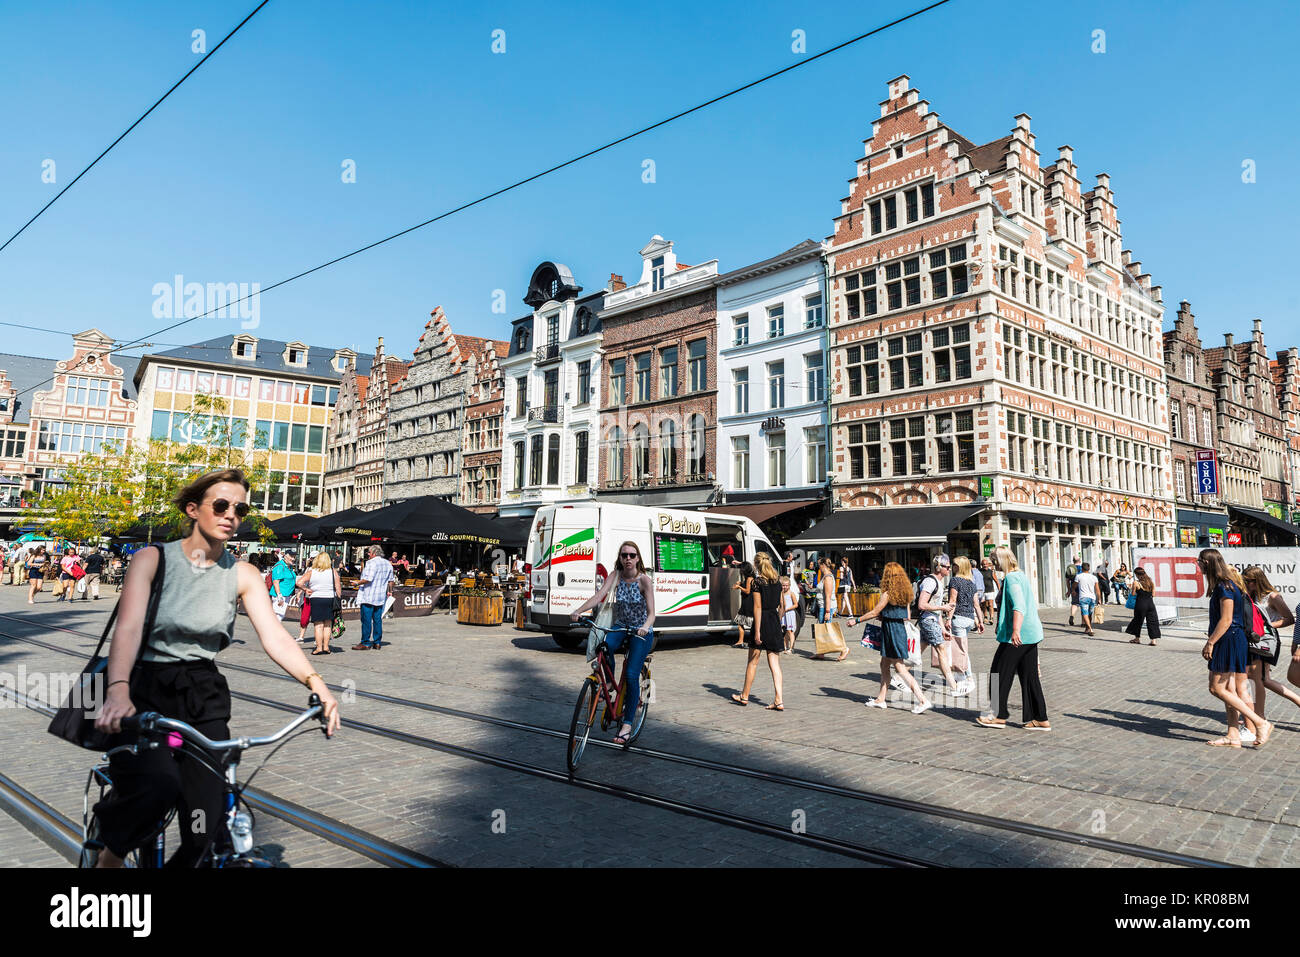 Ghent, Belgio - 29 agosto 2017: Le donne sulle biciclette circolante e gente che passeggia in un antico centro storico della città medievale di Gent, Belgio Foto Stock